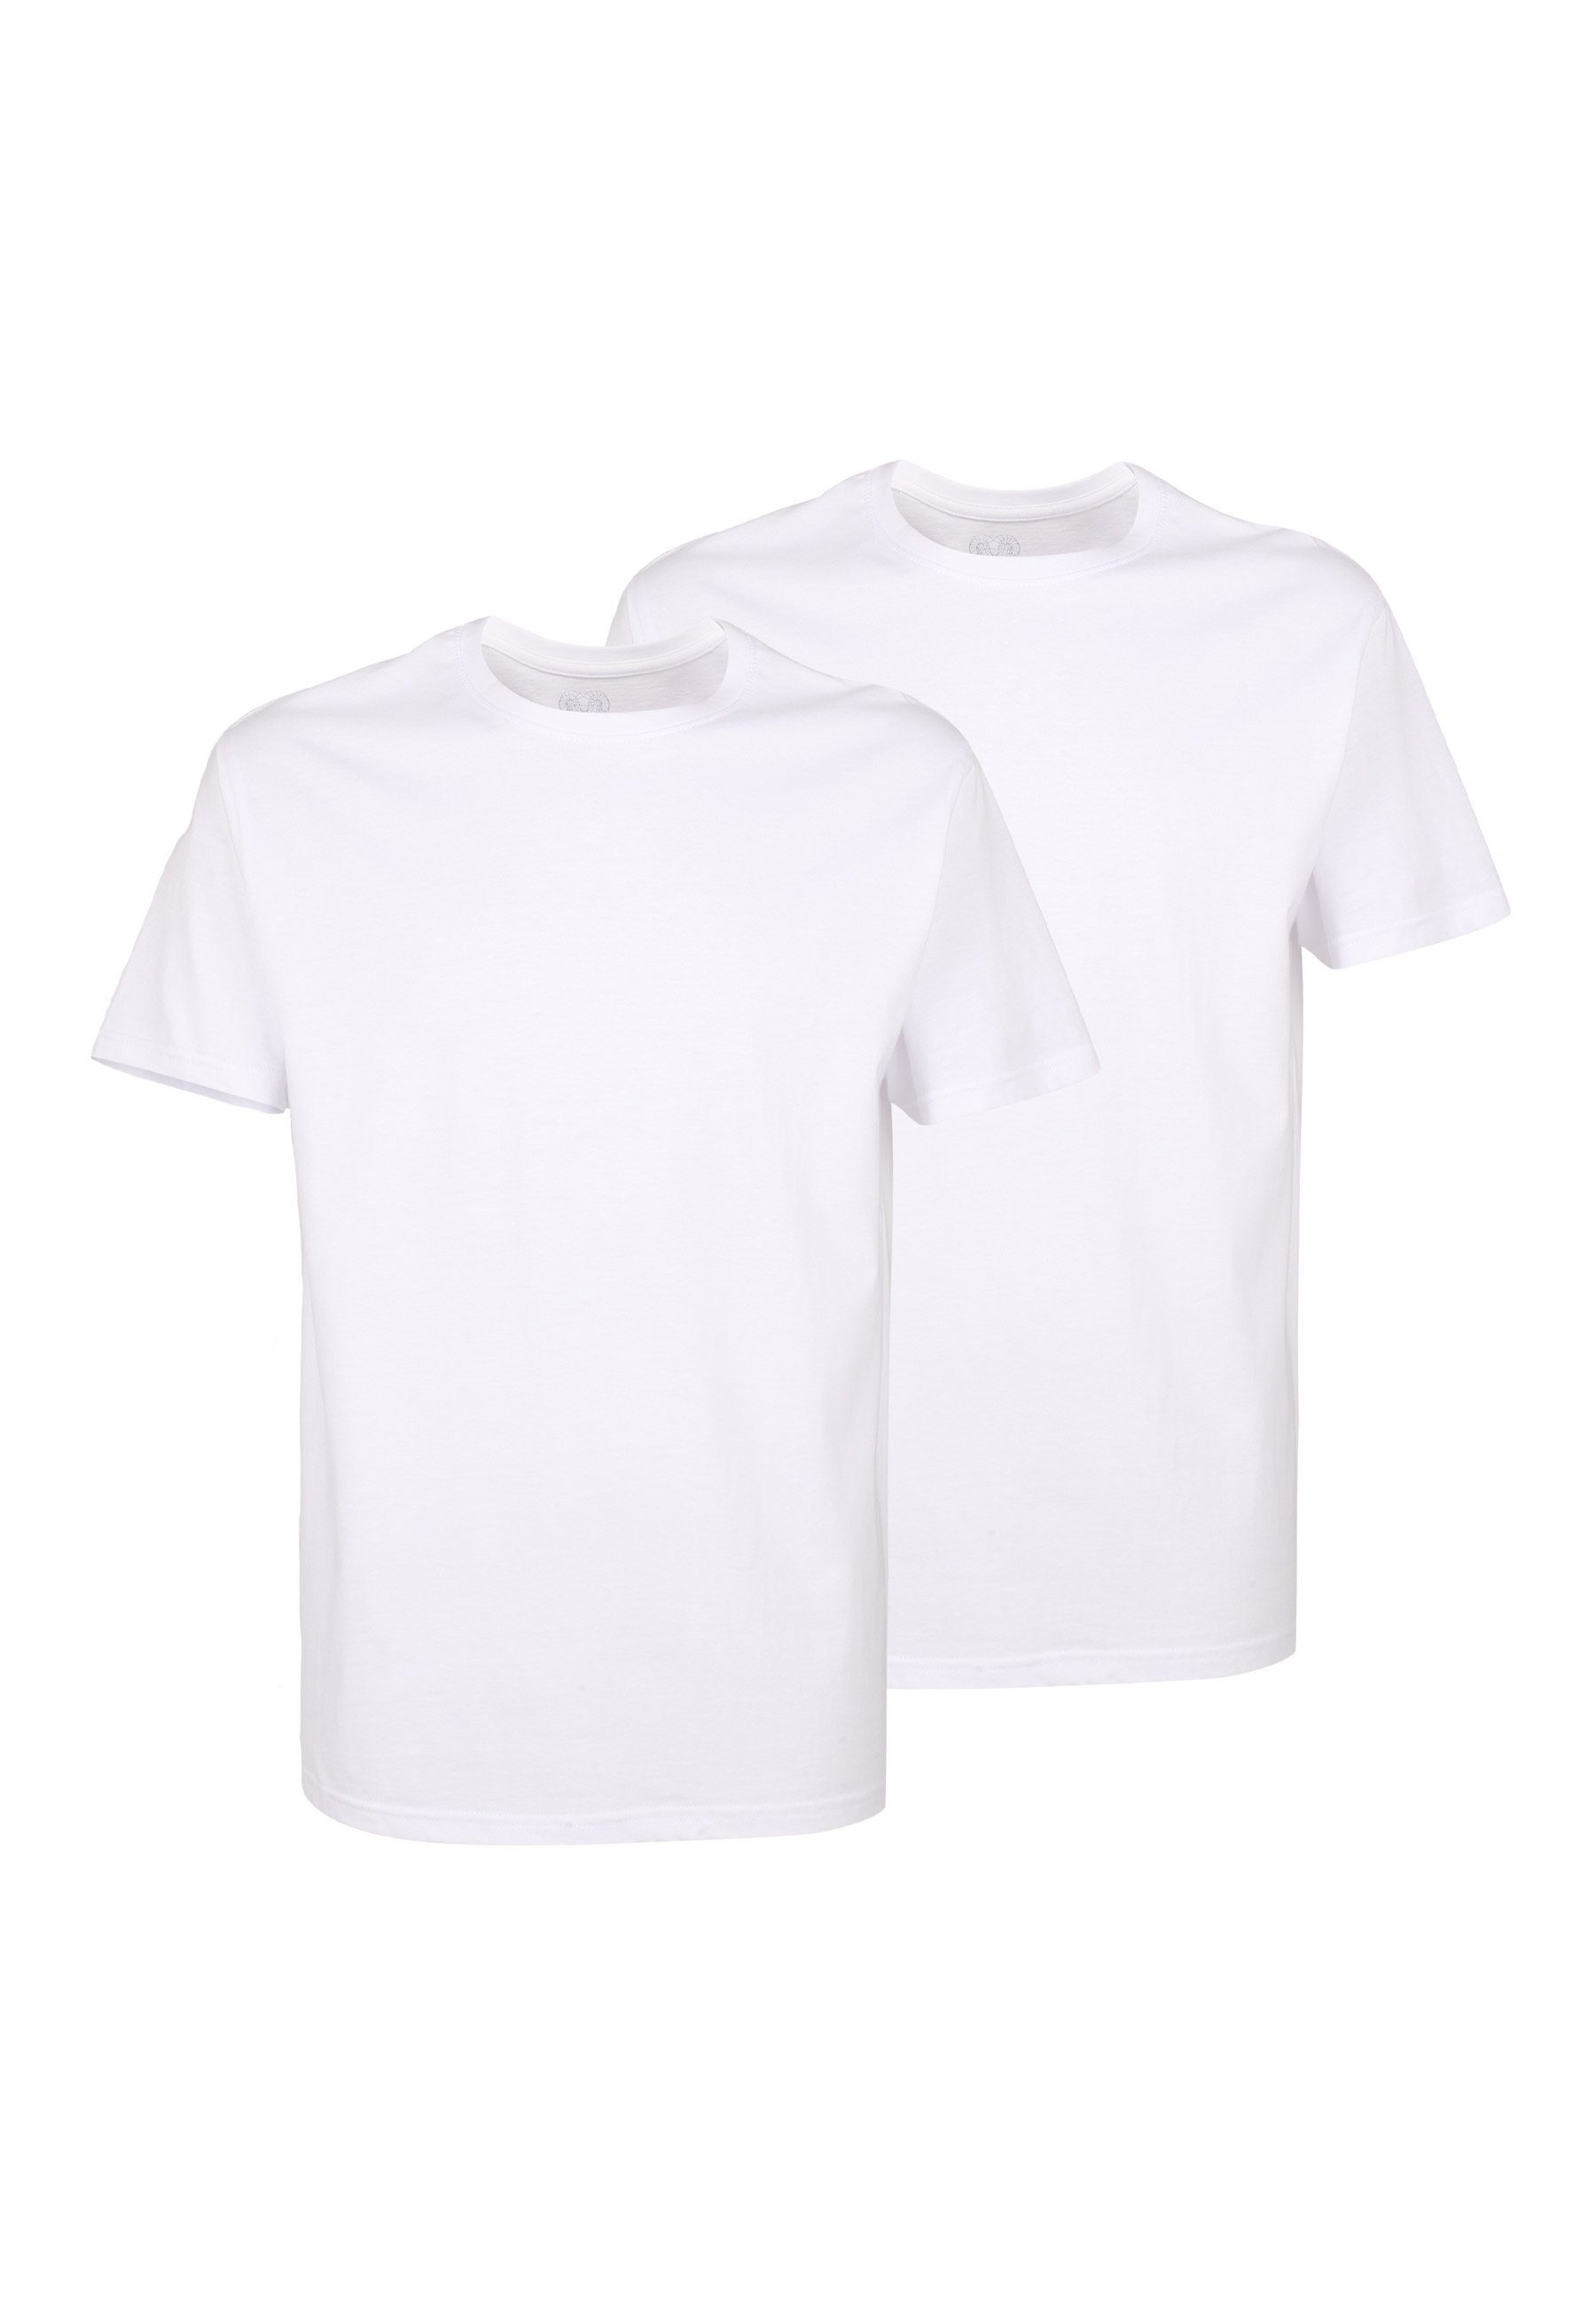 [Qualitätsgarantie und kostenloser Versand vorausgesetzt] Gepunktete T-Shirts für Herren online kaufen | OTTO